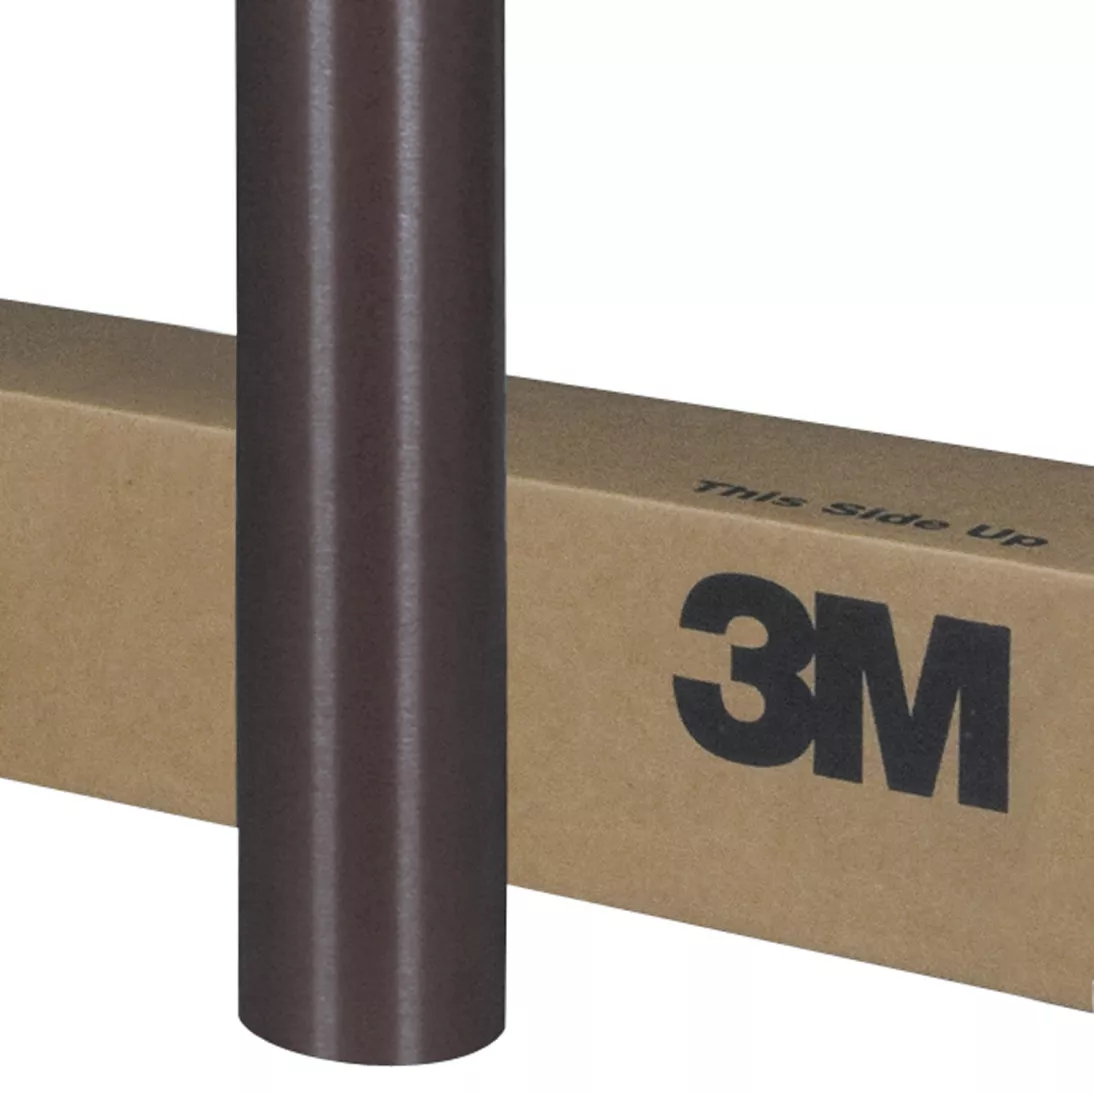 3M™ Wrap Film Series 1080-M209, Matte Brown Metallic, 60 in x 10 yd